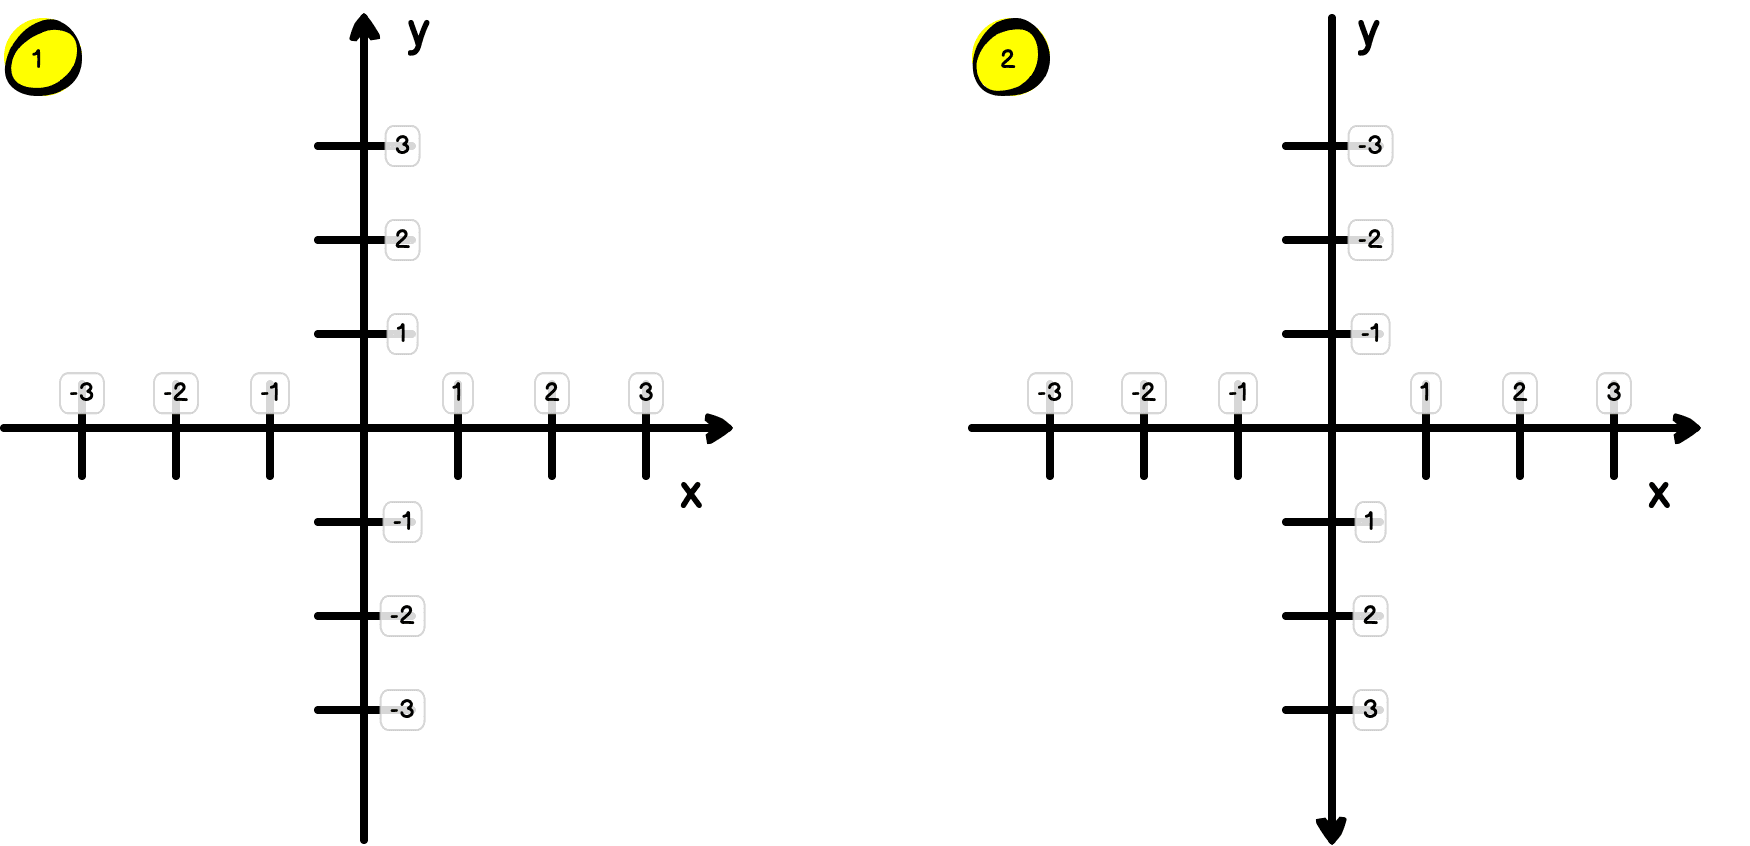 Pod liczbą 1 znajduje się kartezjański układ współrzędnych. Wartości na osi OX rosną w prawo, a wartości na osi OY do góry. Pod liczbą 2 znajduje się komputerowa odmiana kartezjańskiego układu współrzędnych. Wartości na osi OX rosną w prawo, a wartości na osi OY w dół.